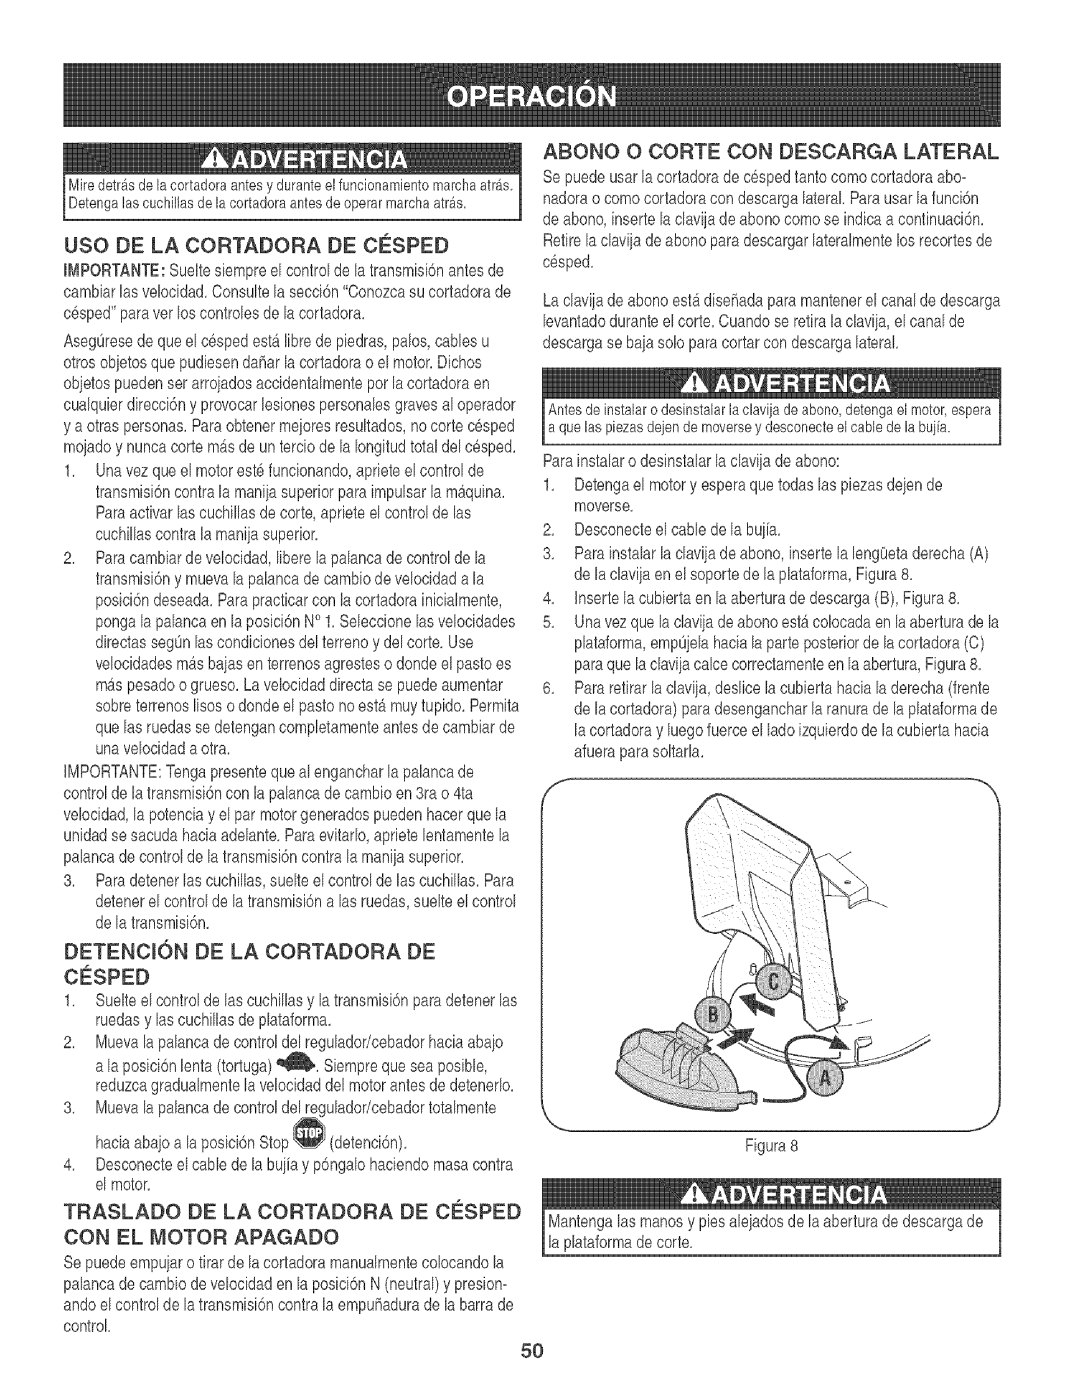 Craftsman 247.88933 manual Abono O Corte Con Descarga Lateral, Uso De La Cortadora, De Ce_Sped, Con El Motor Apagado 